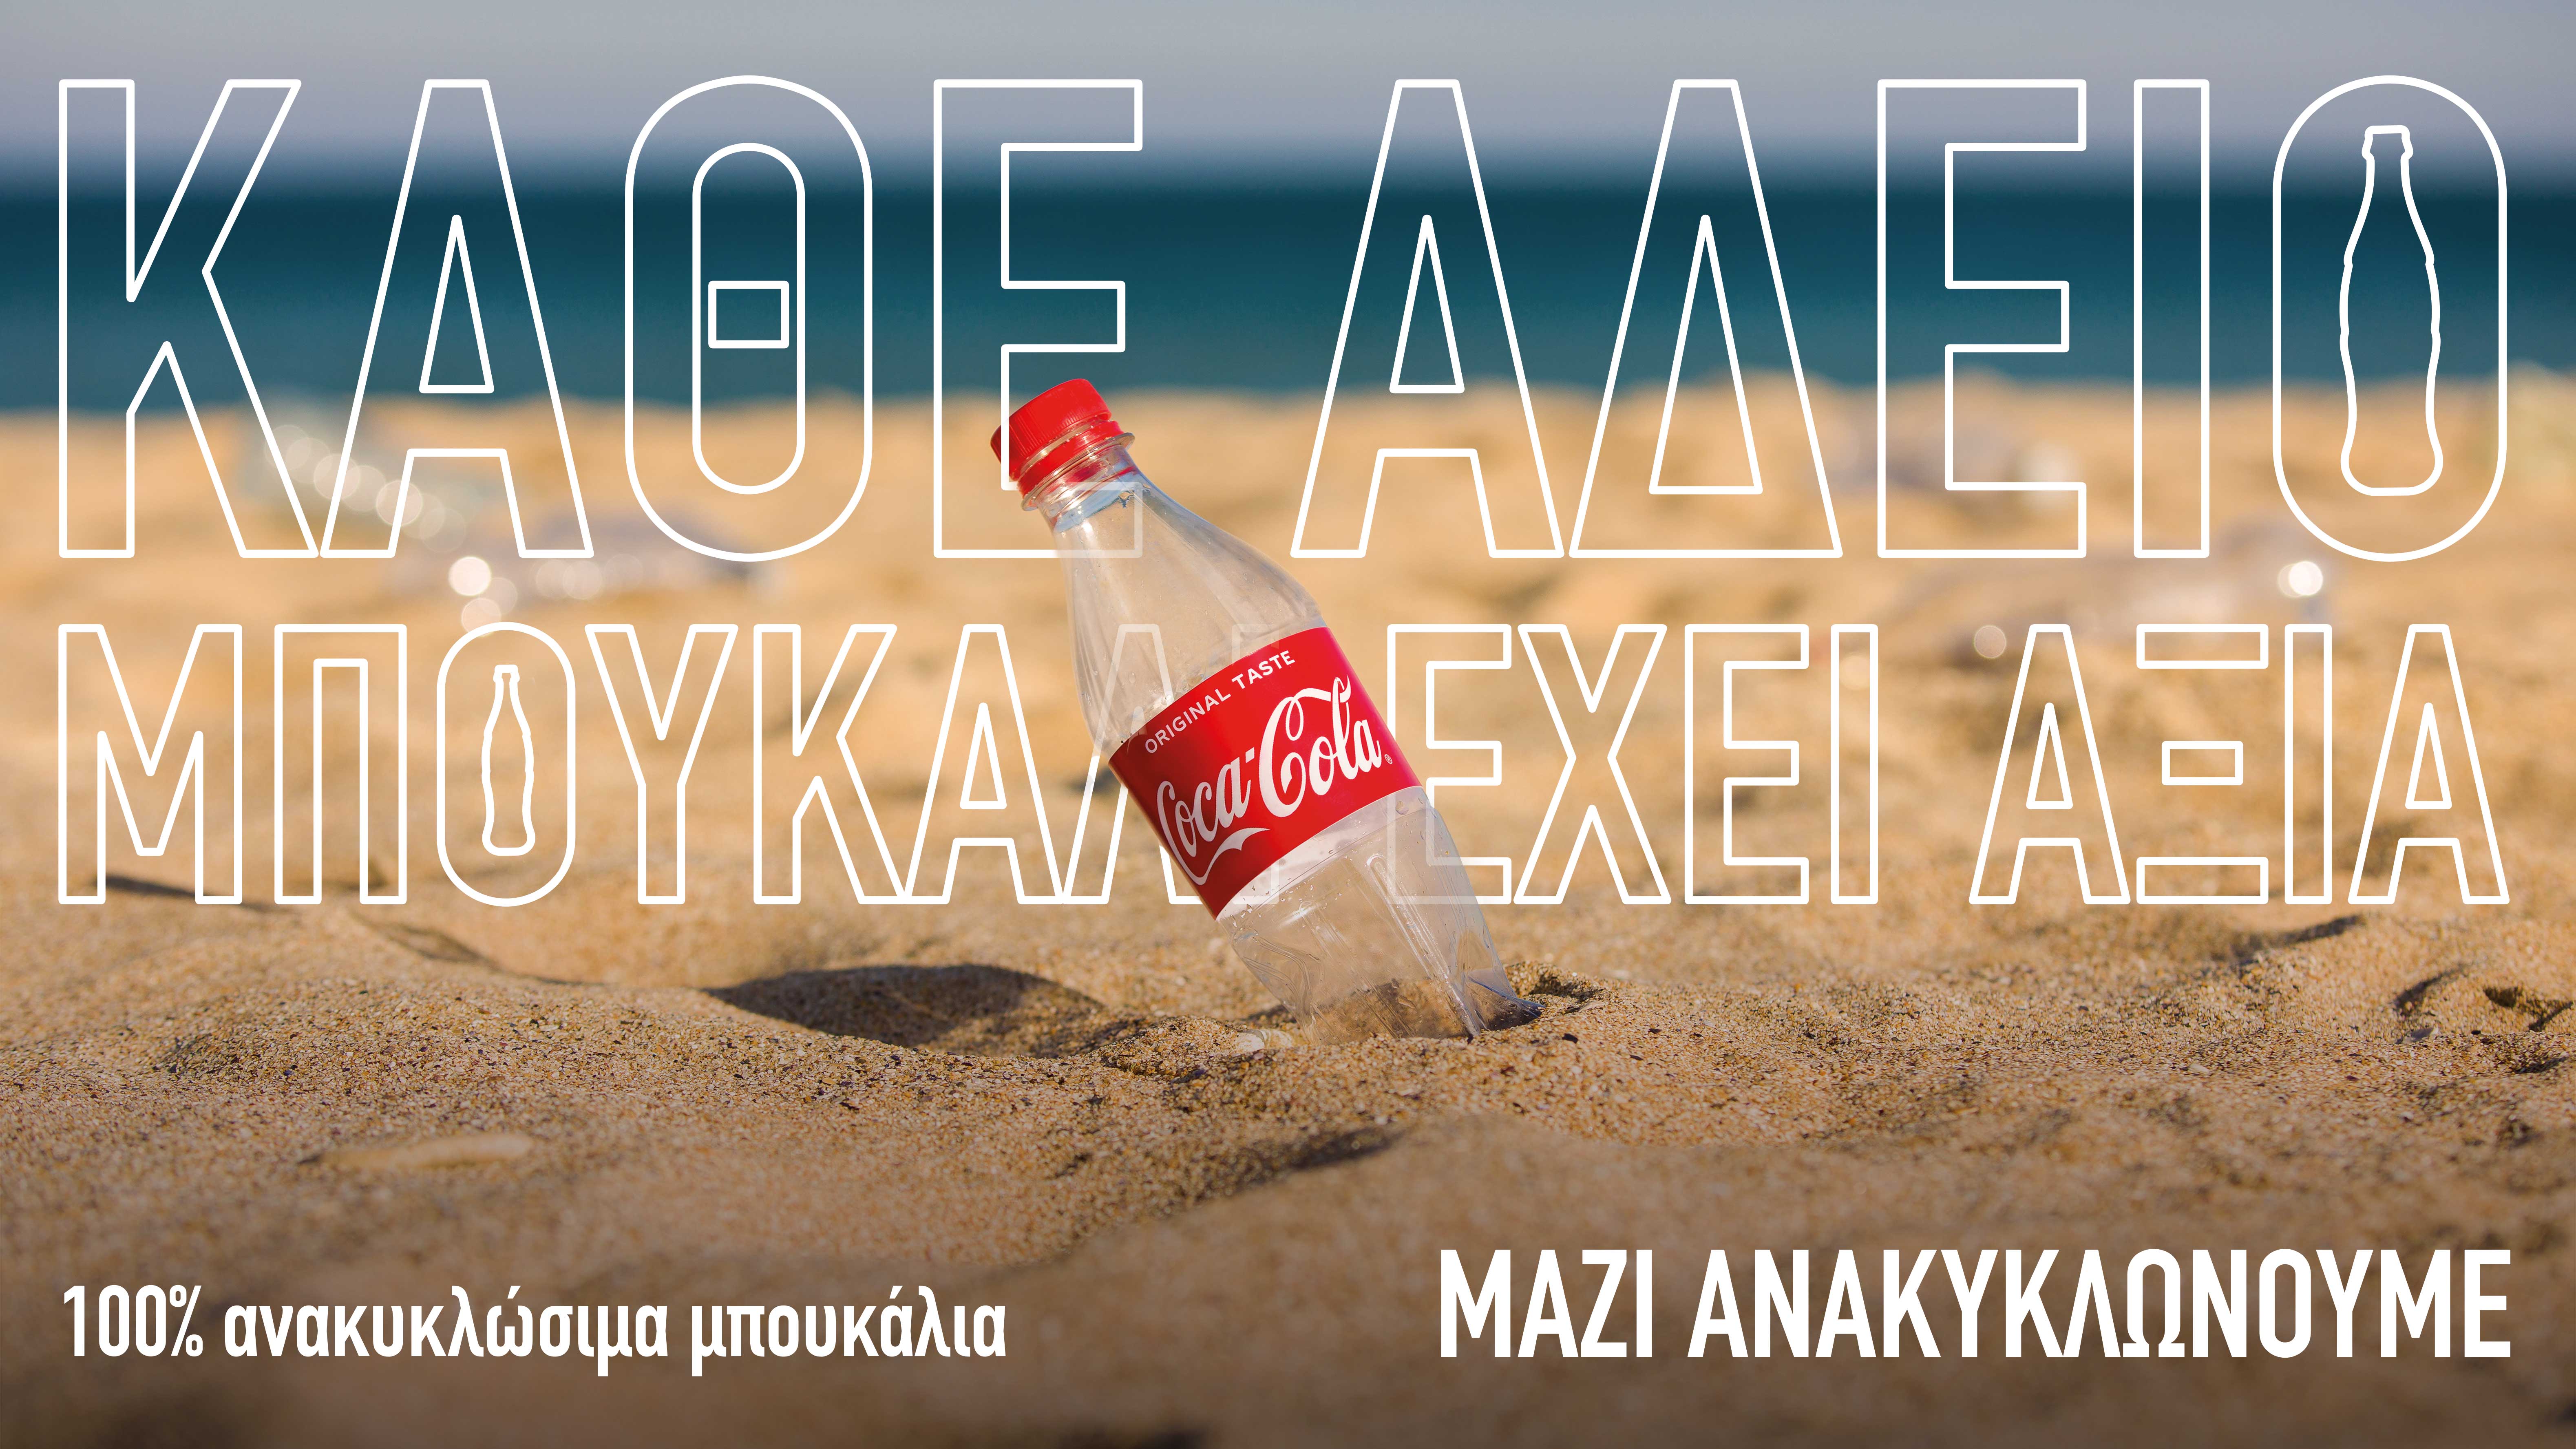 alt="coca cola empty bottle on beach landscape"